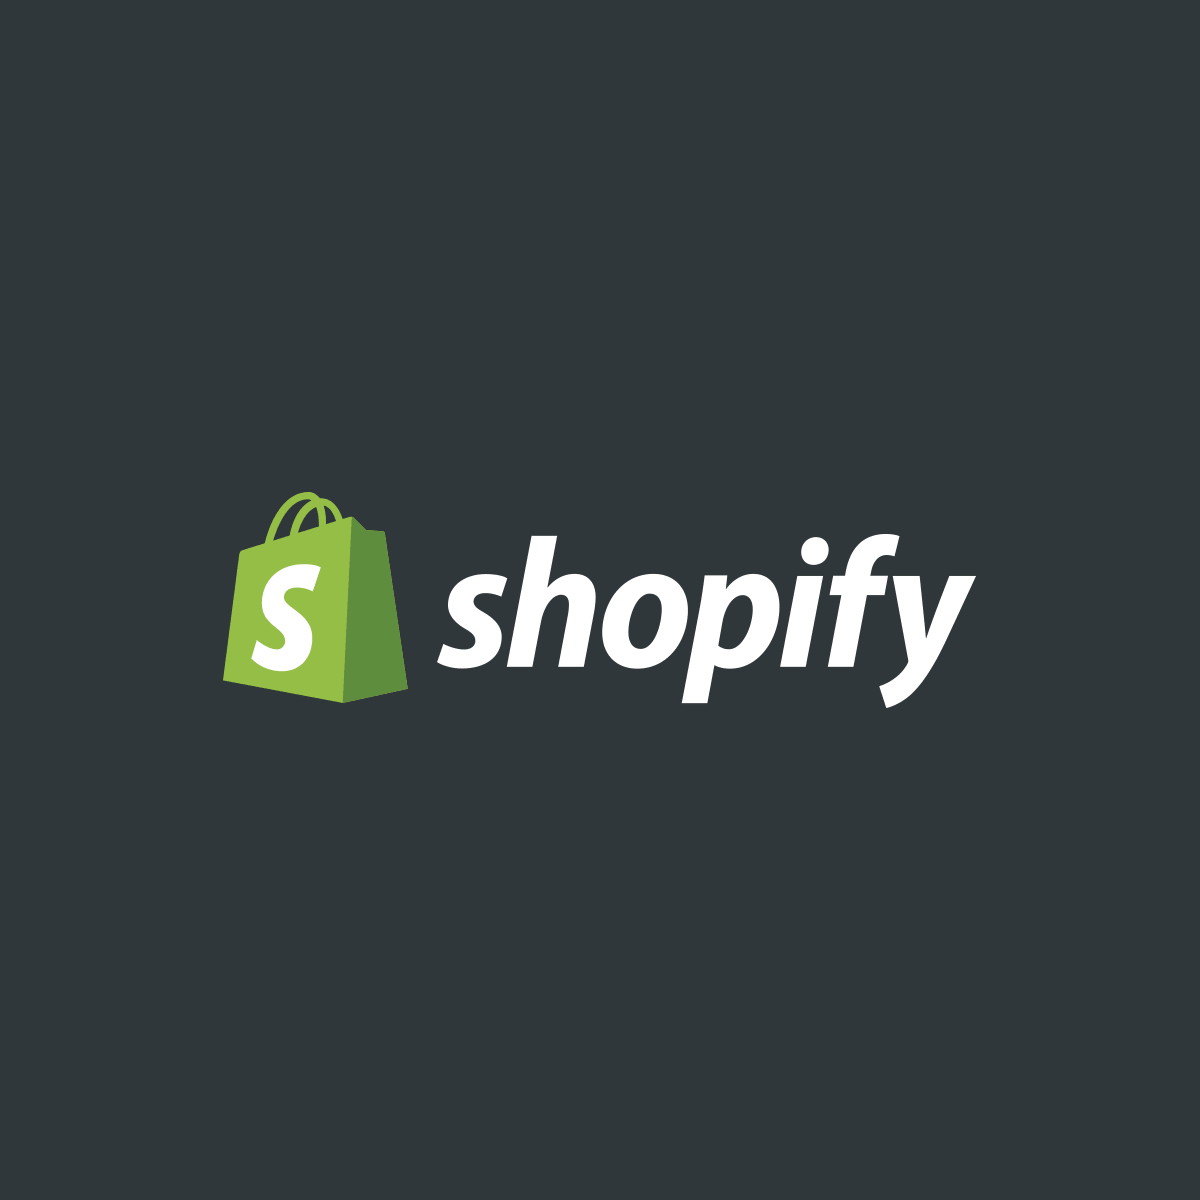 ТОП 5 Премиум шаблонов для Shopify 2019